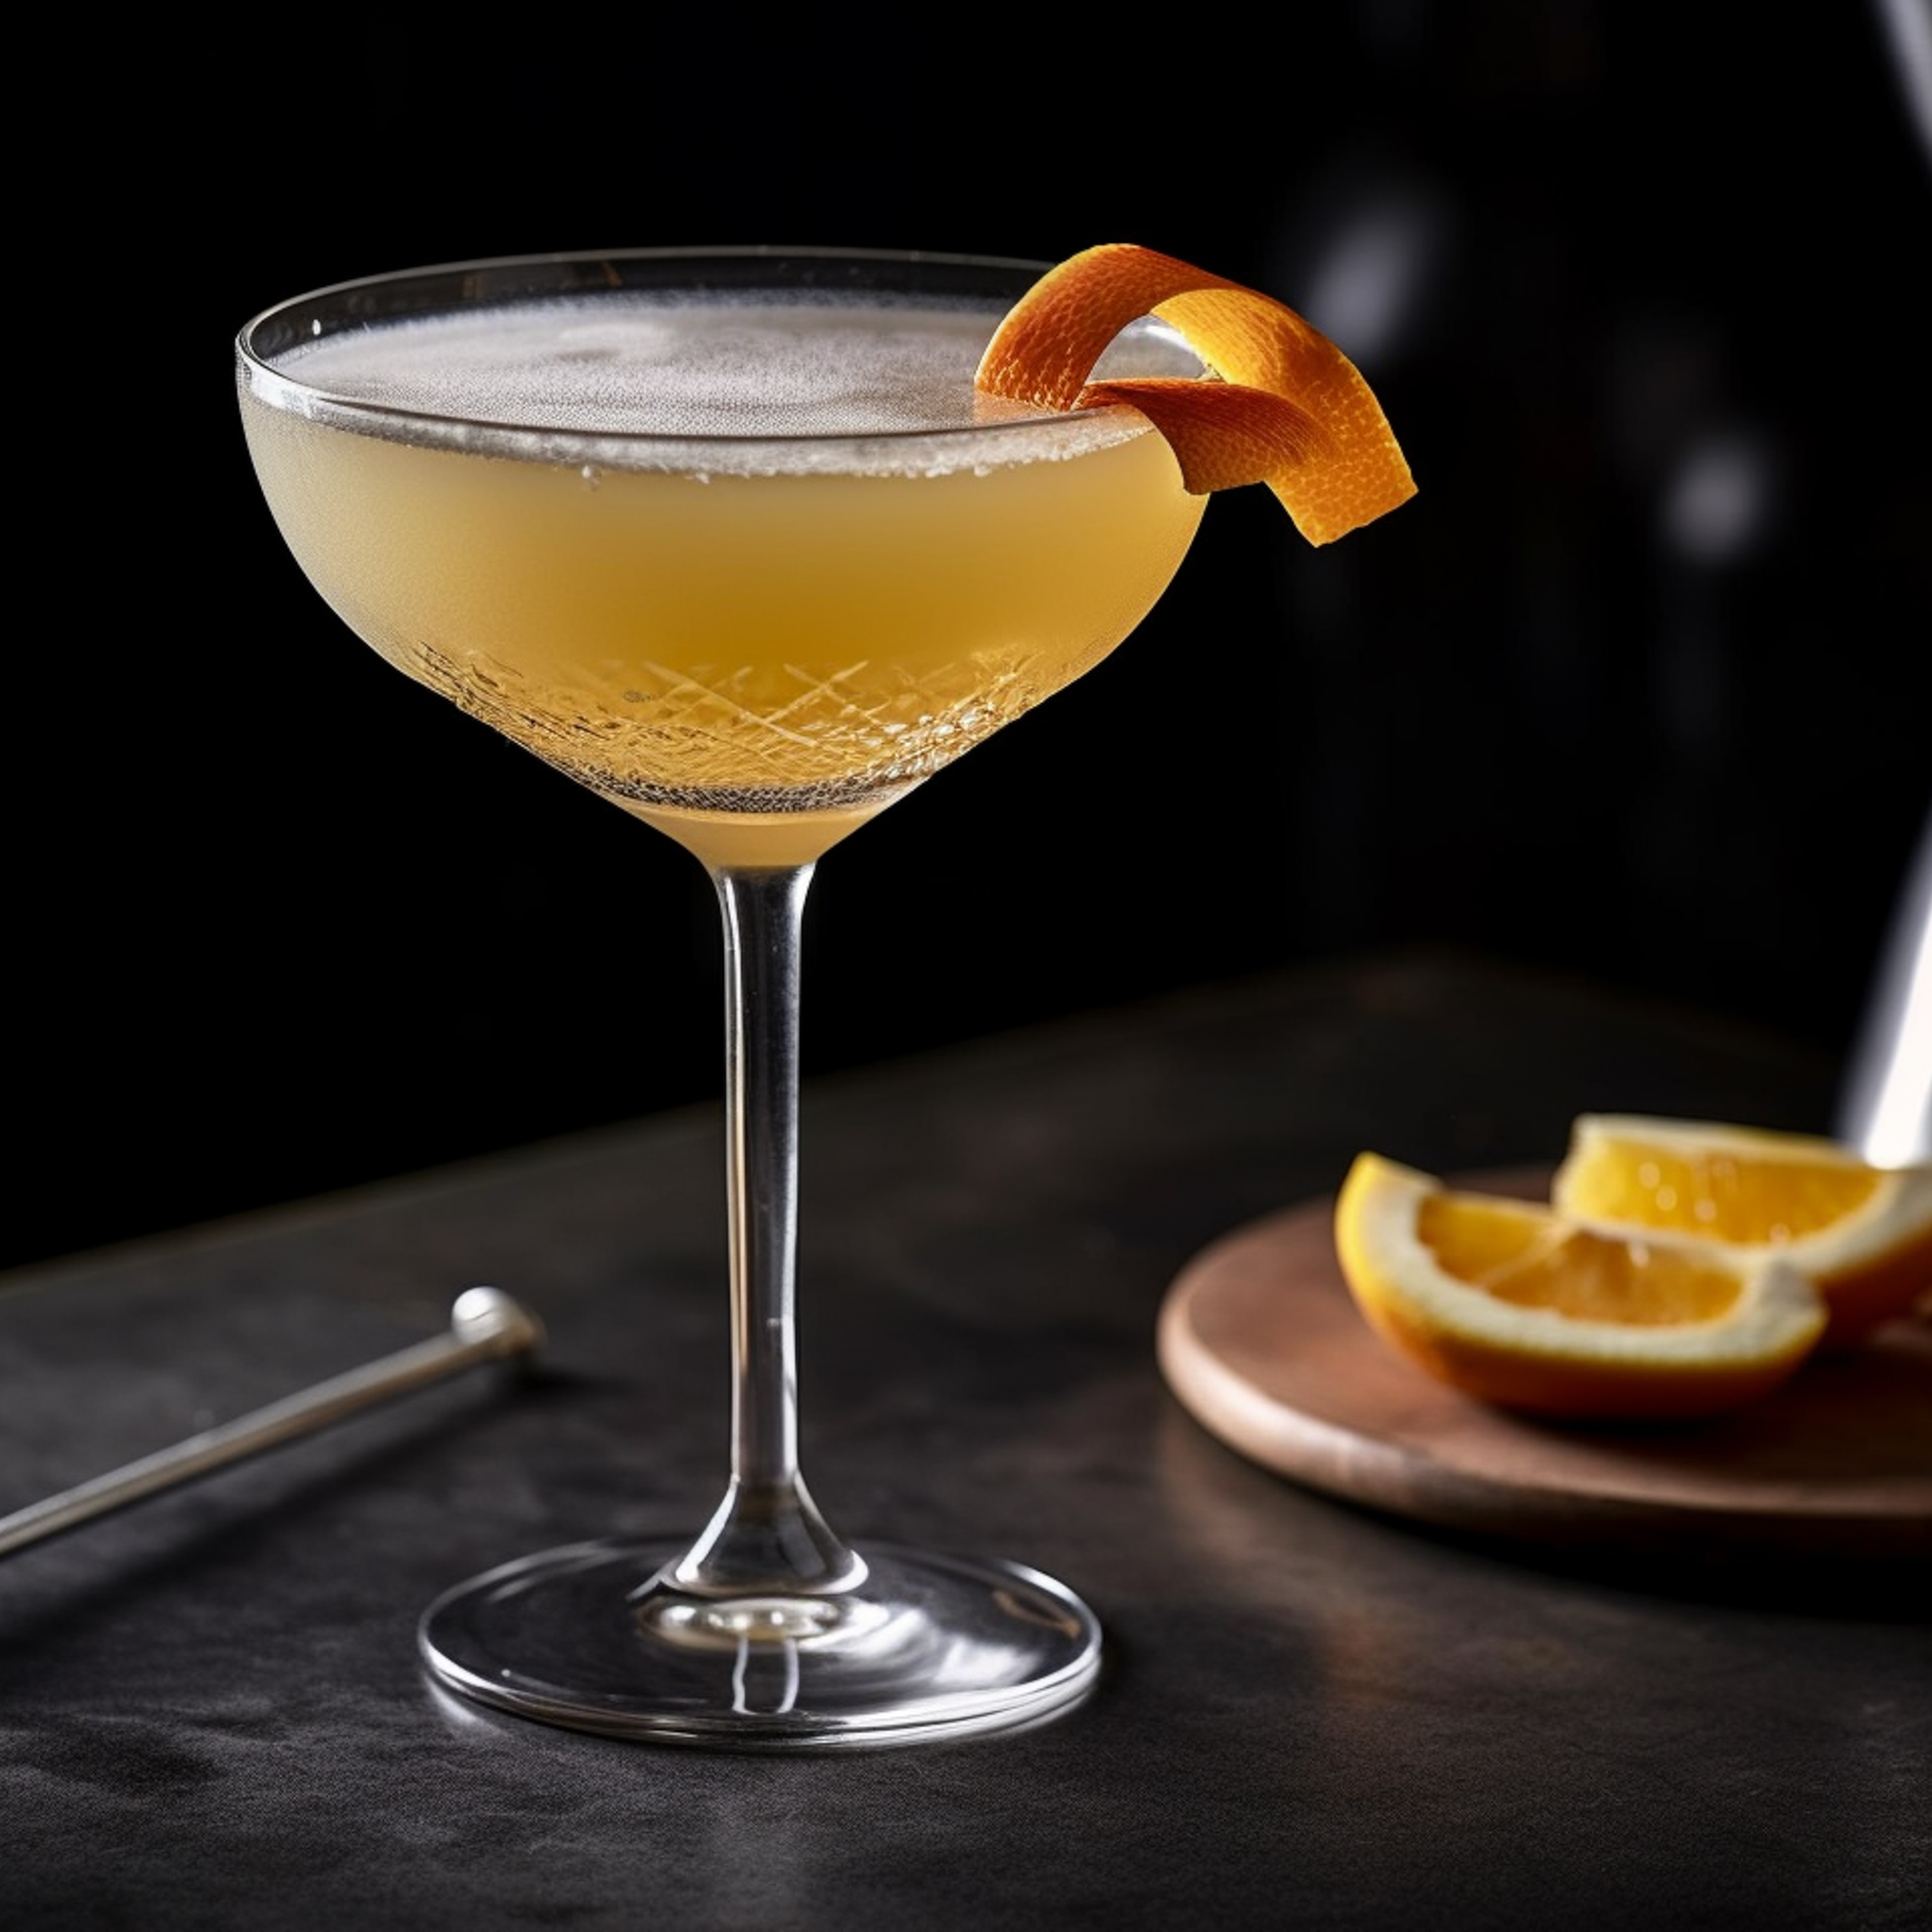 Ein Breakfast Martini Cocktail mit Gin, Orangenlikör, Orangenmarmelade und Zitronensaft.